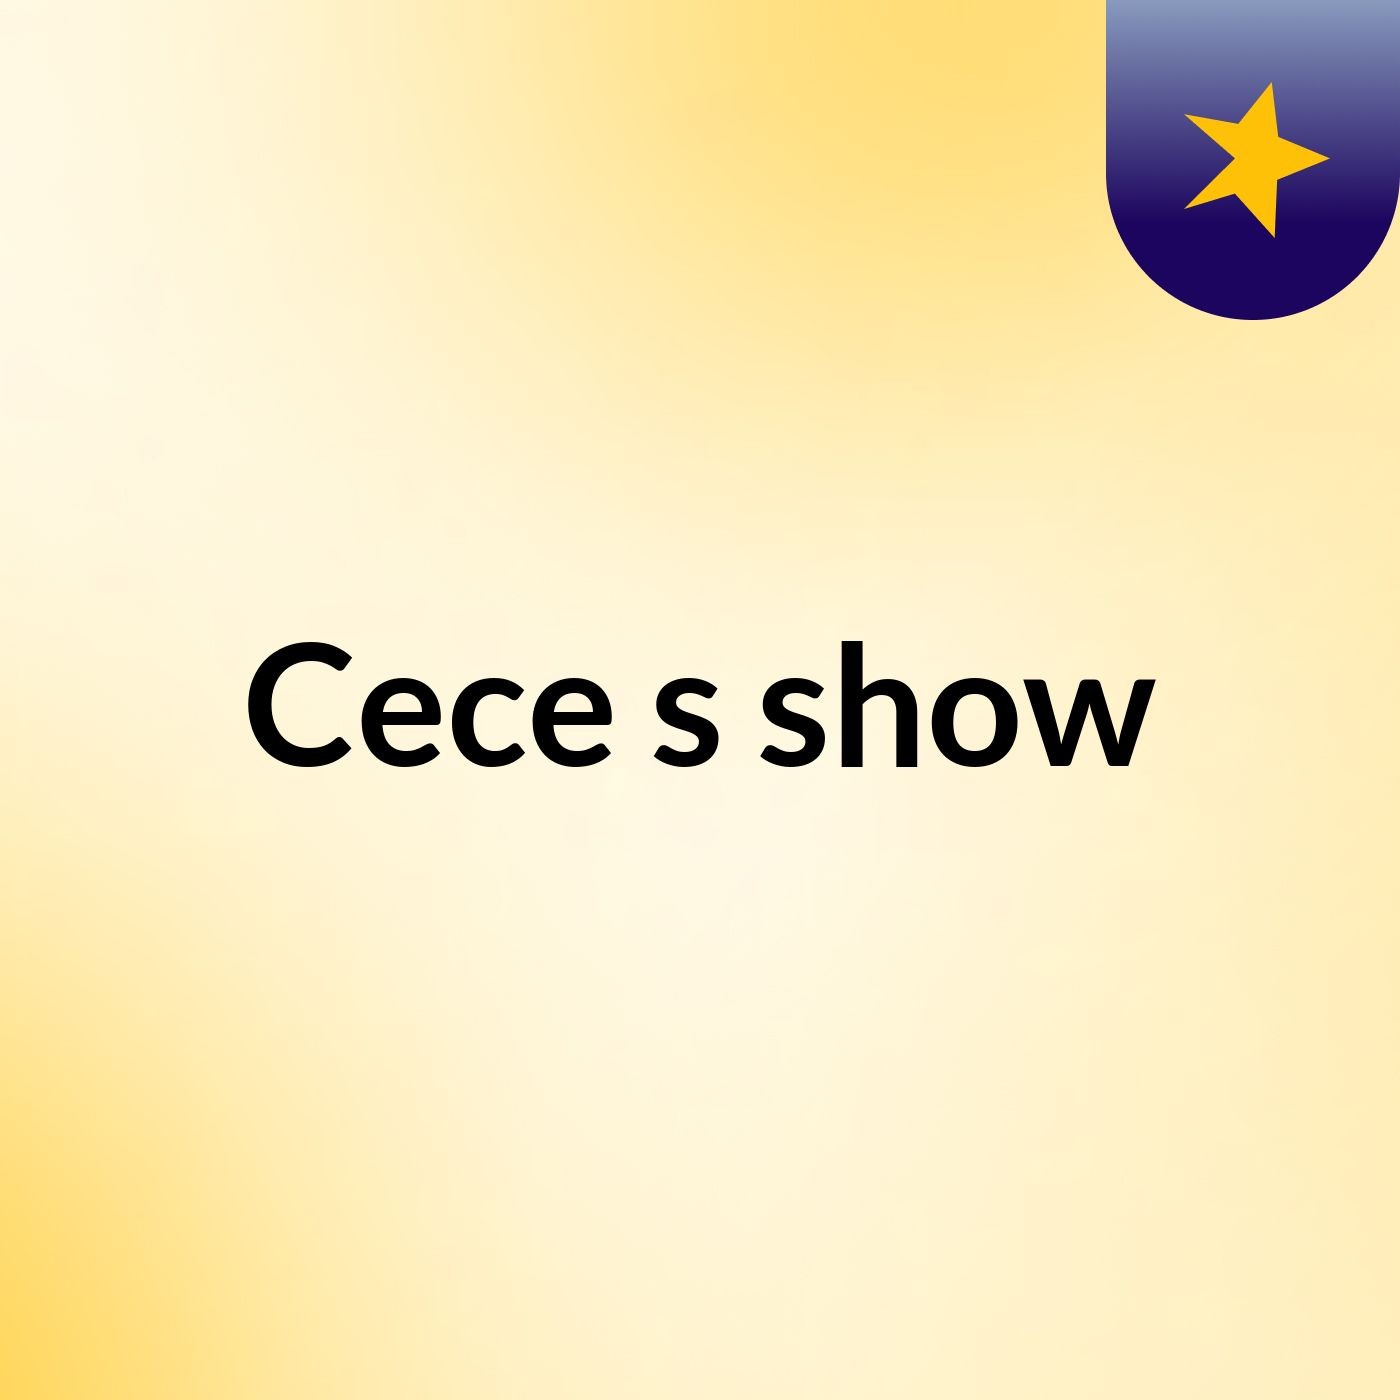 Cece's show